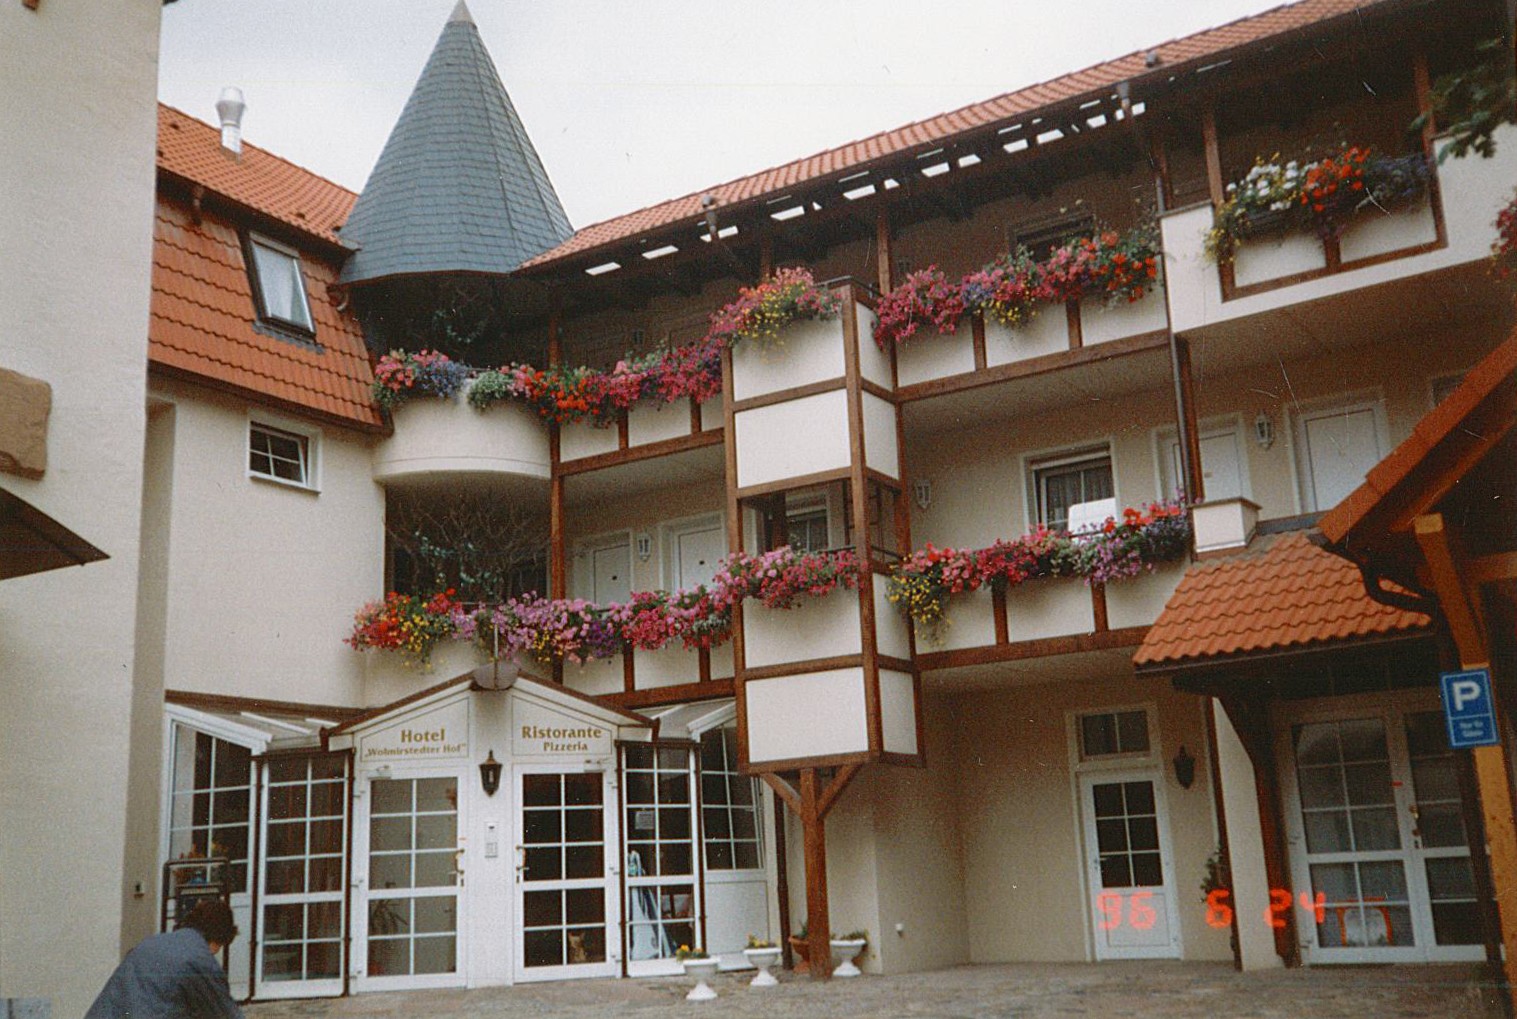 Stadtansicht Wolmirstedt - Hotel "Wolmirstedter Hof", 24.06.1996 (Museum Wolmirstedt RR-F)